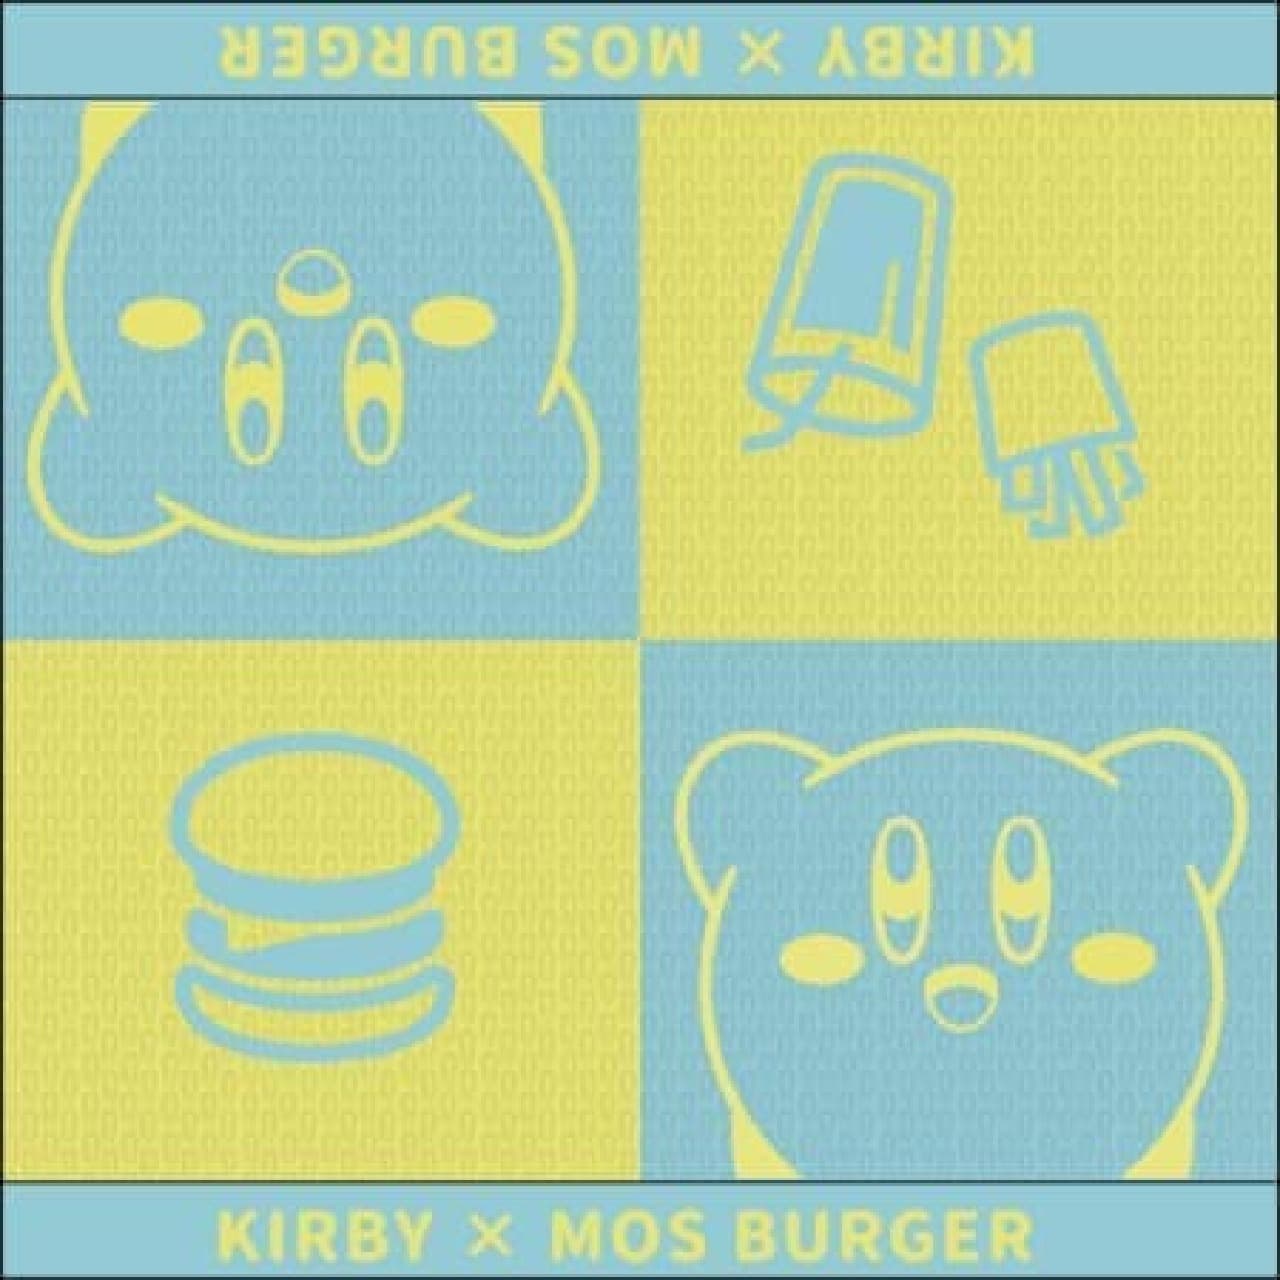 Summer lucky bag "Moss x Kirby Summer Lucky Bag" 4 kinds of original miscellaneous goods + meal assistance ticket